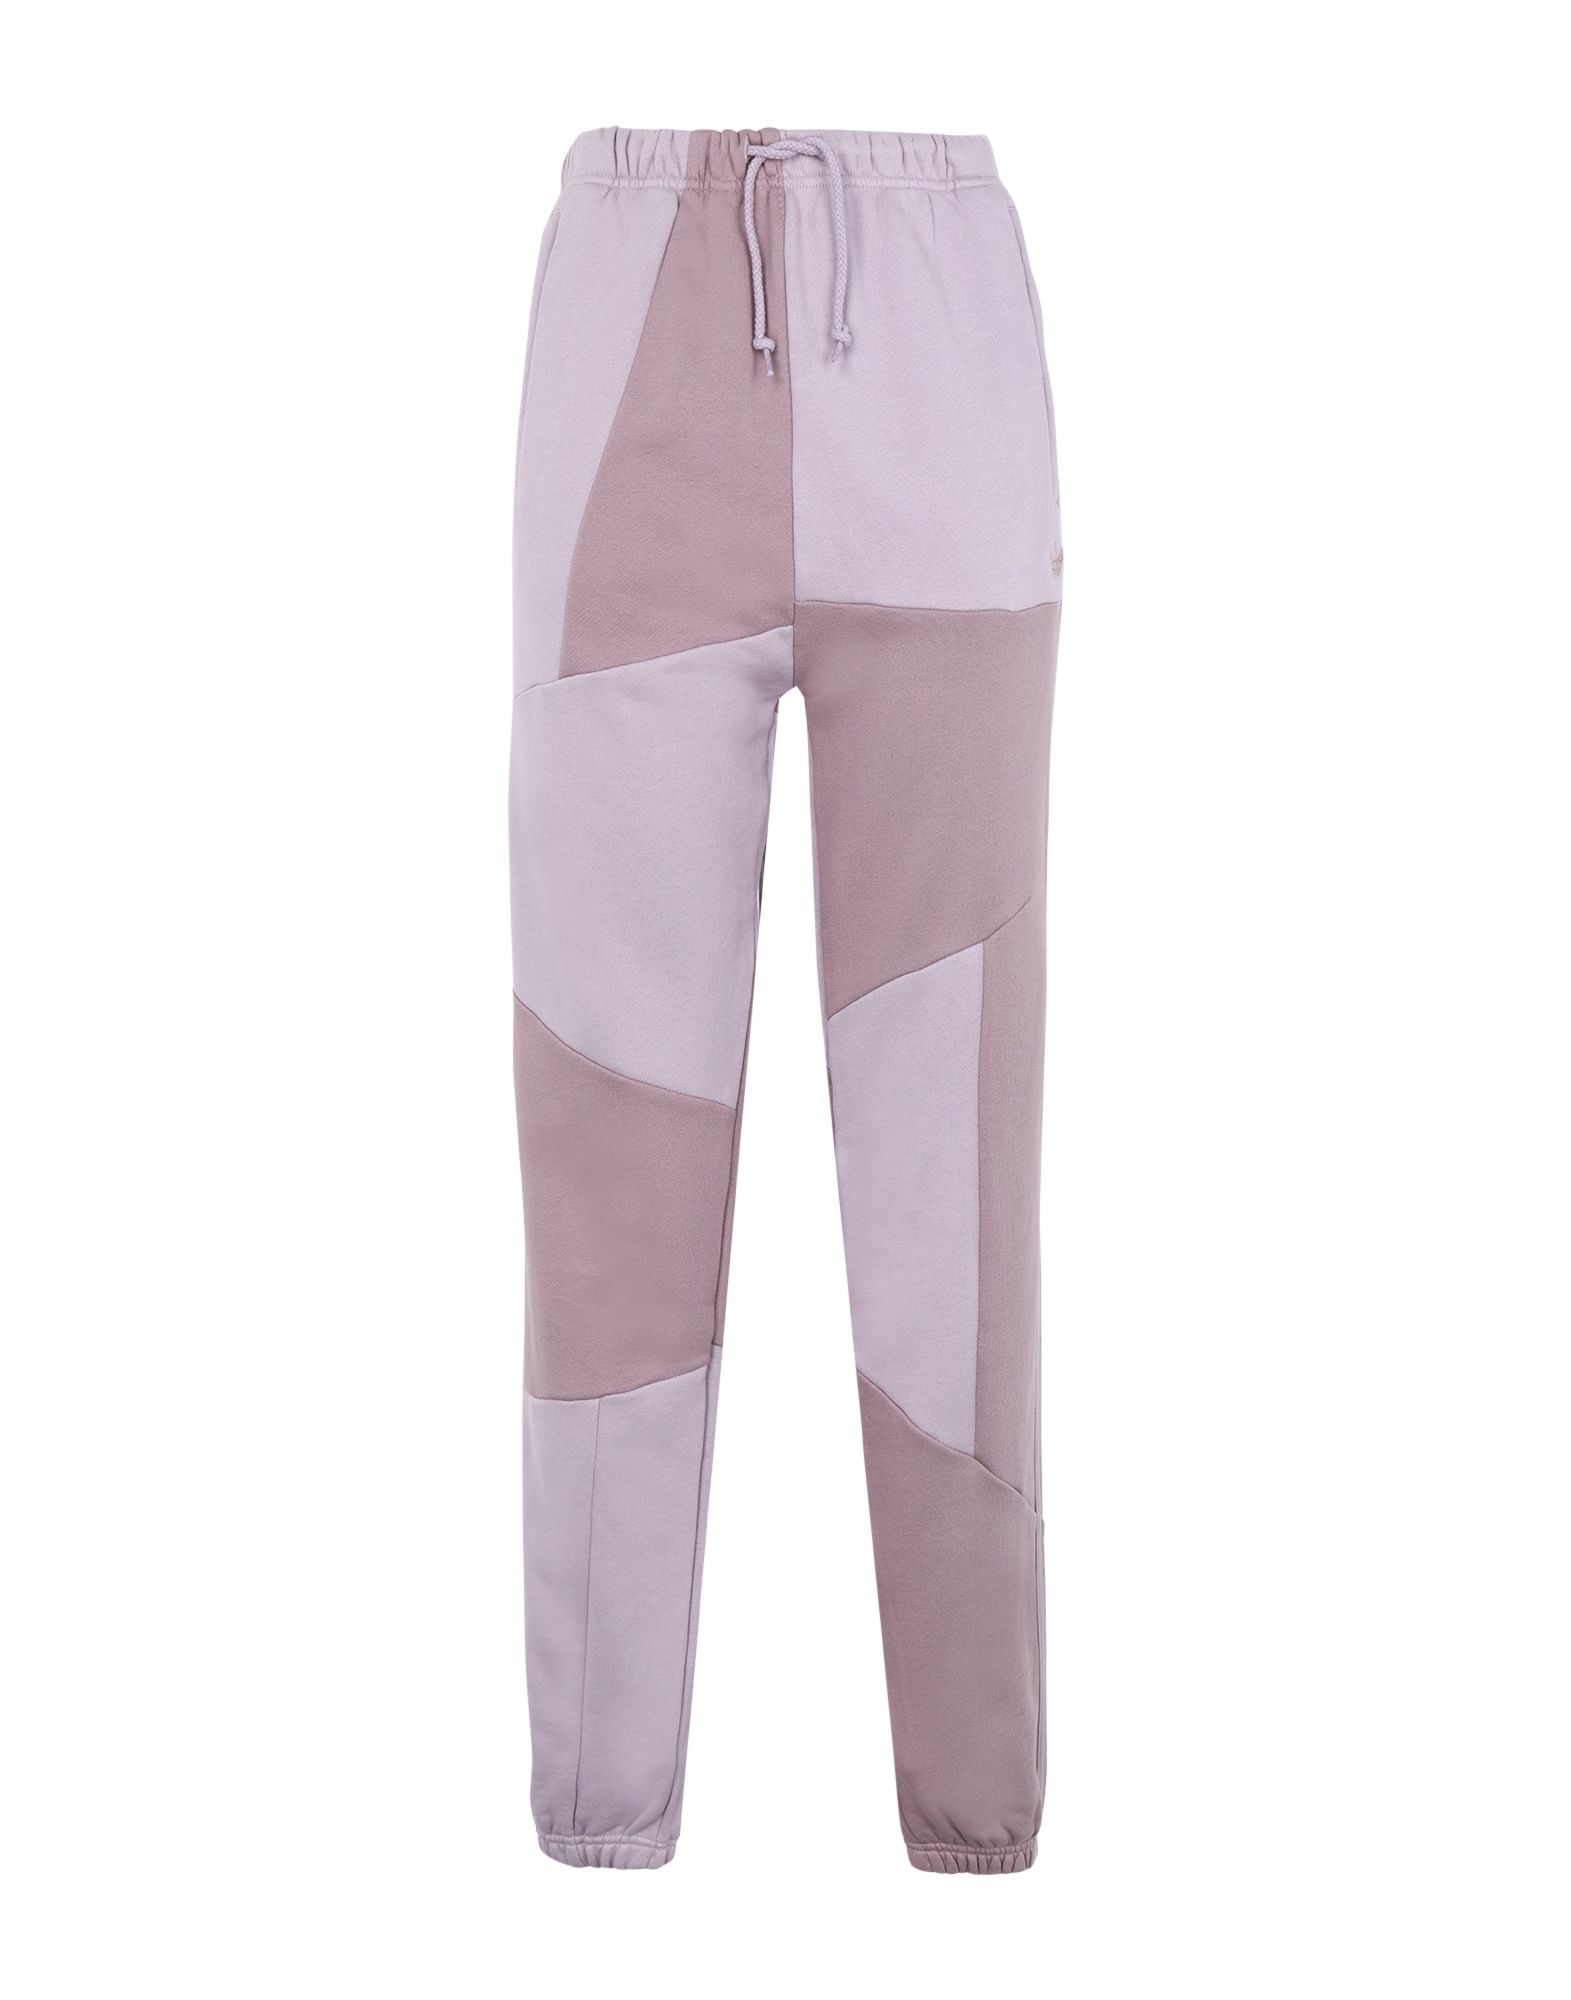 Повседневные брюки  - Серый,Фиолетовый цвет